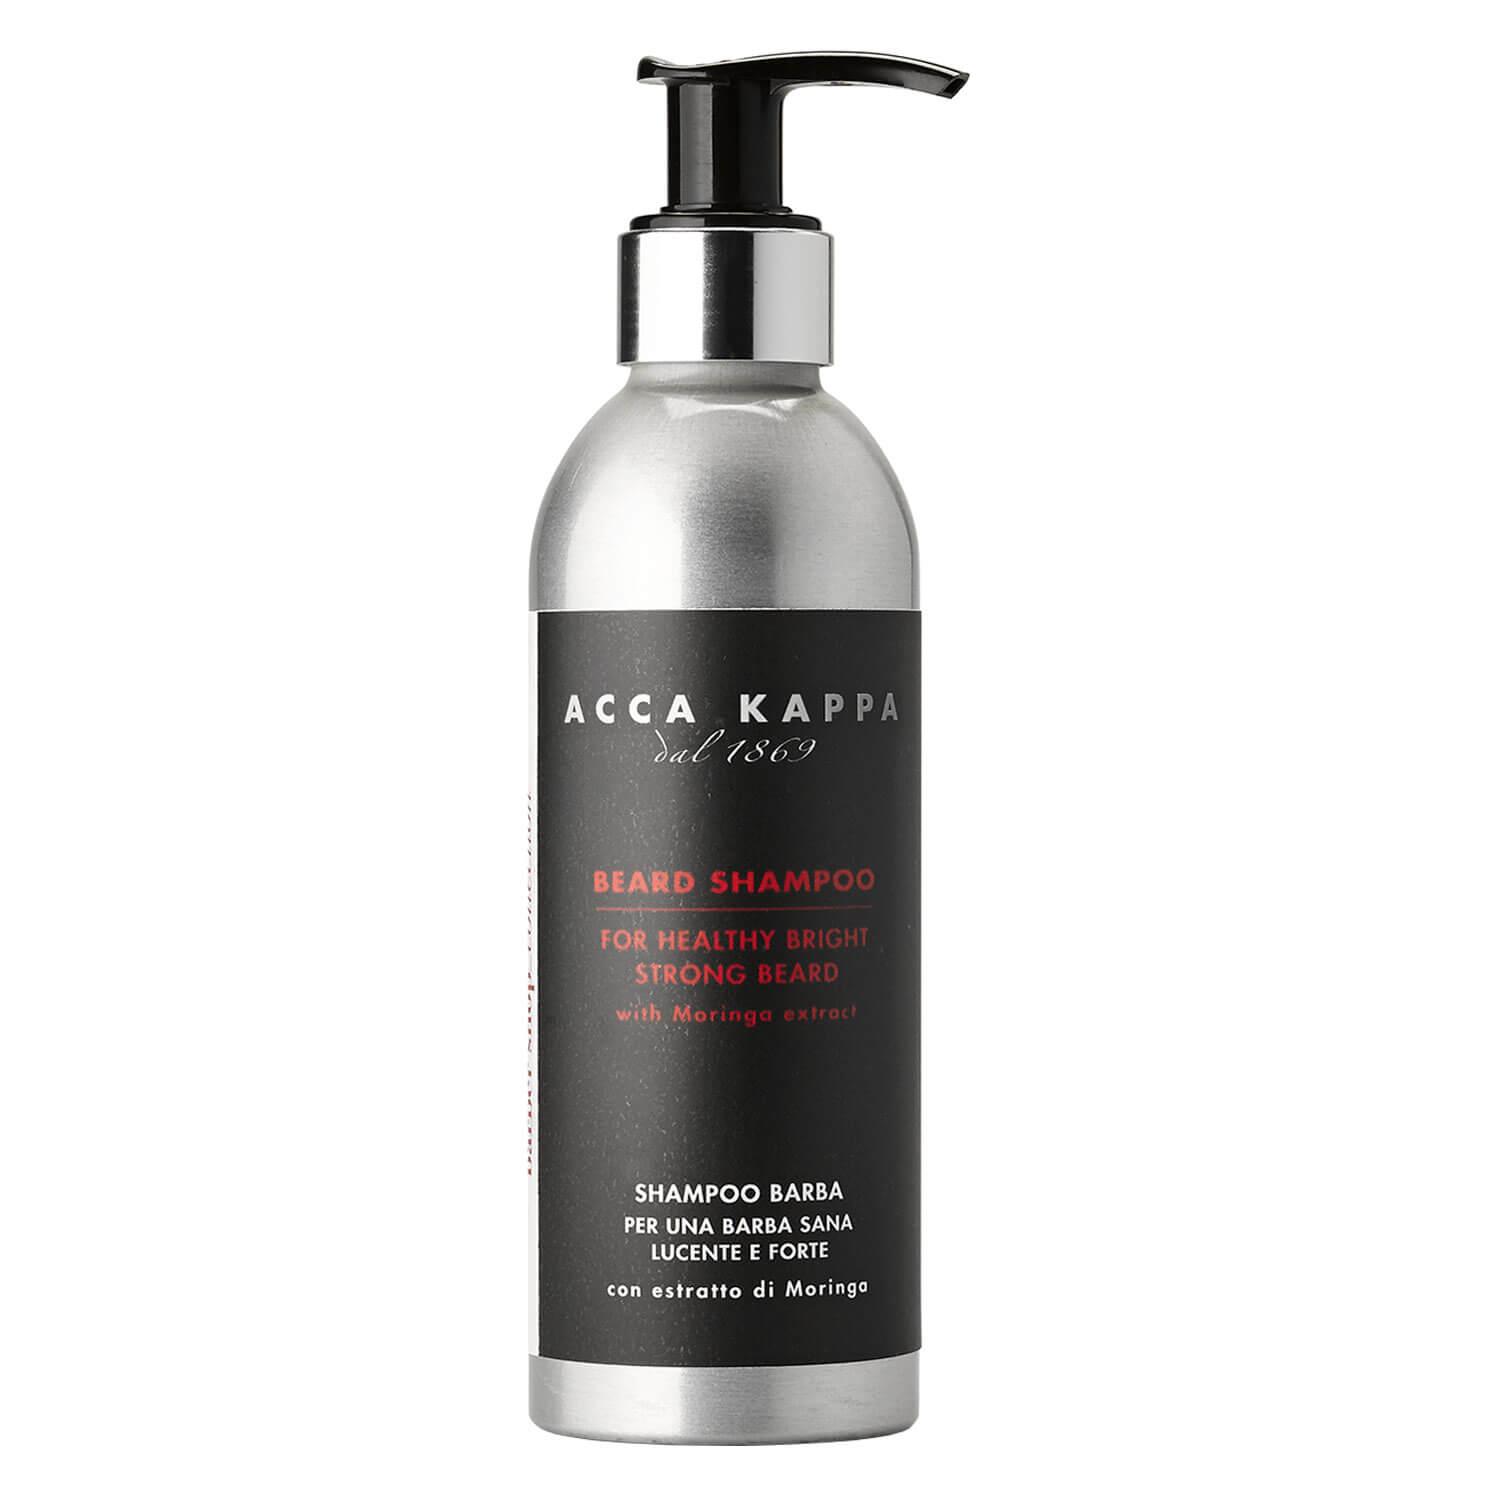 ACCA KAPPA - Beard Shampoo